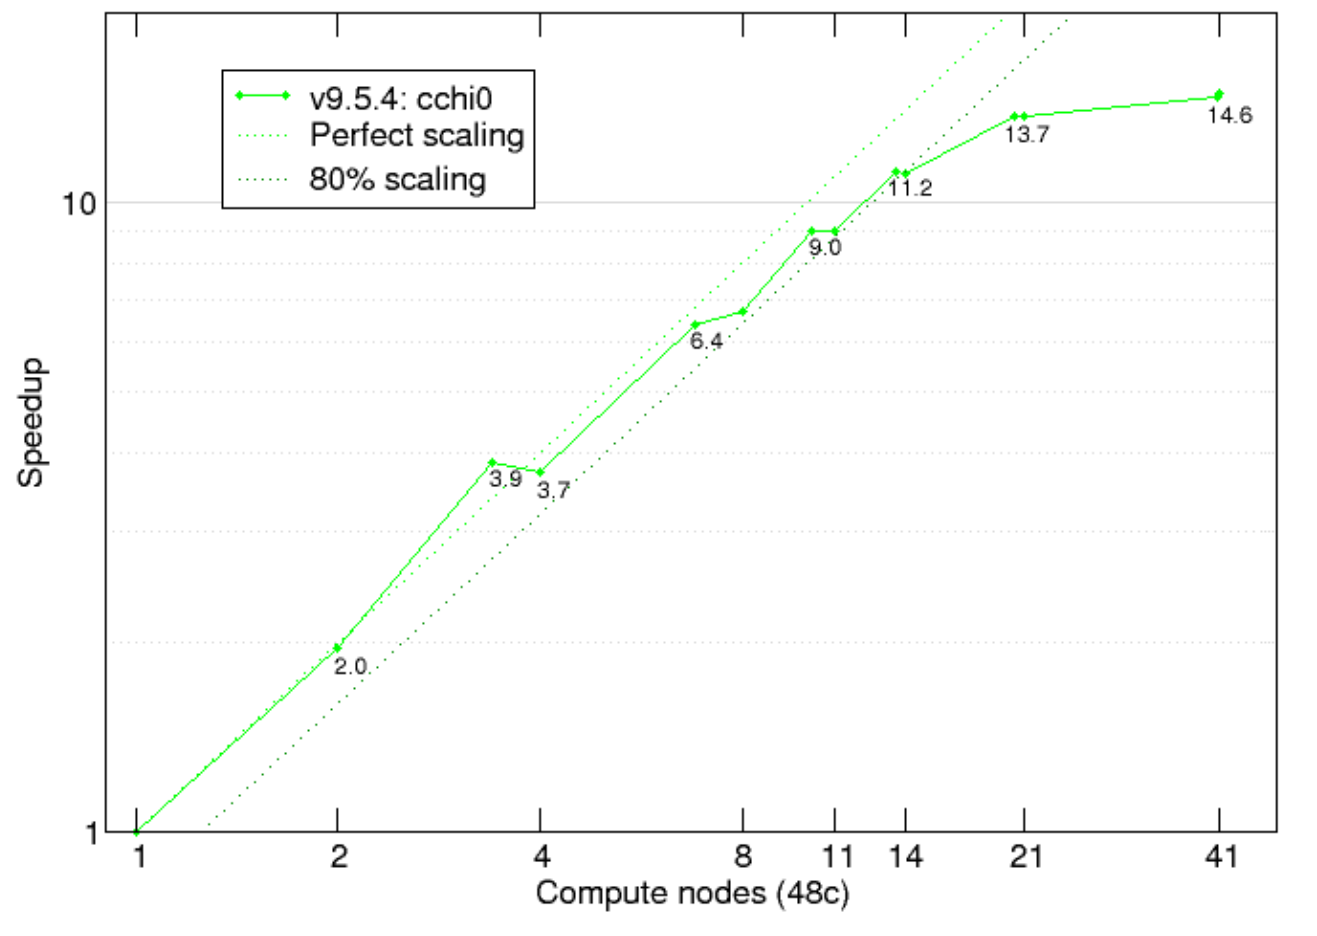 GW screening test on Zr2Y2O7/C1 testcase on MN4 “highmem” compute nodes